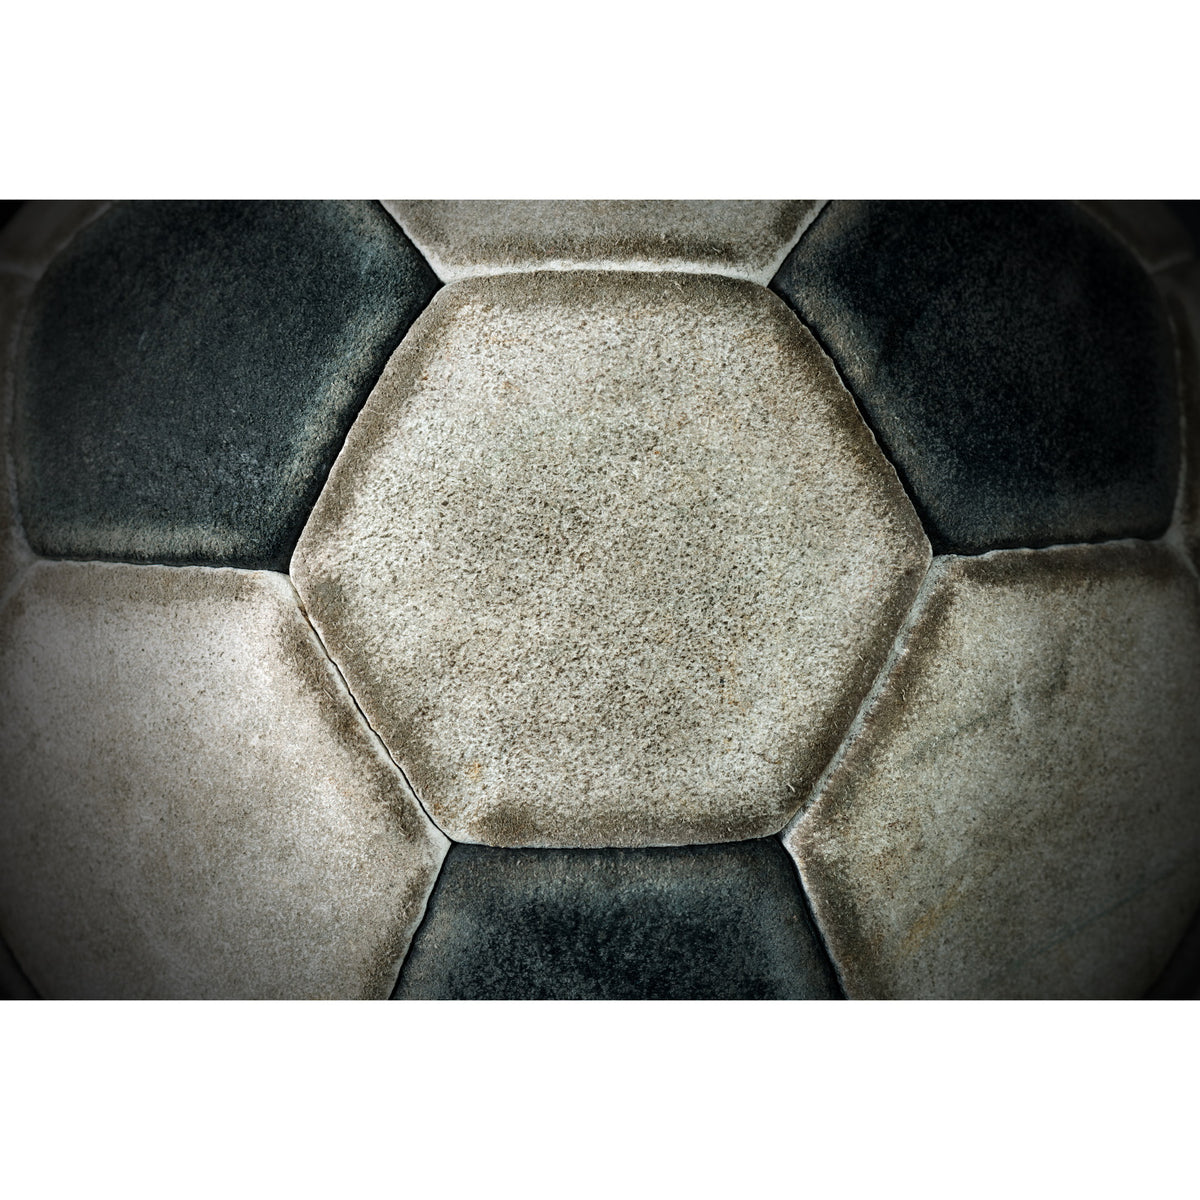 Soccer Ball - 808 Wall Art